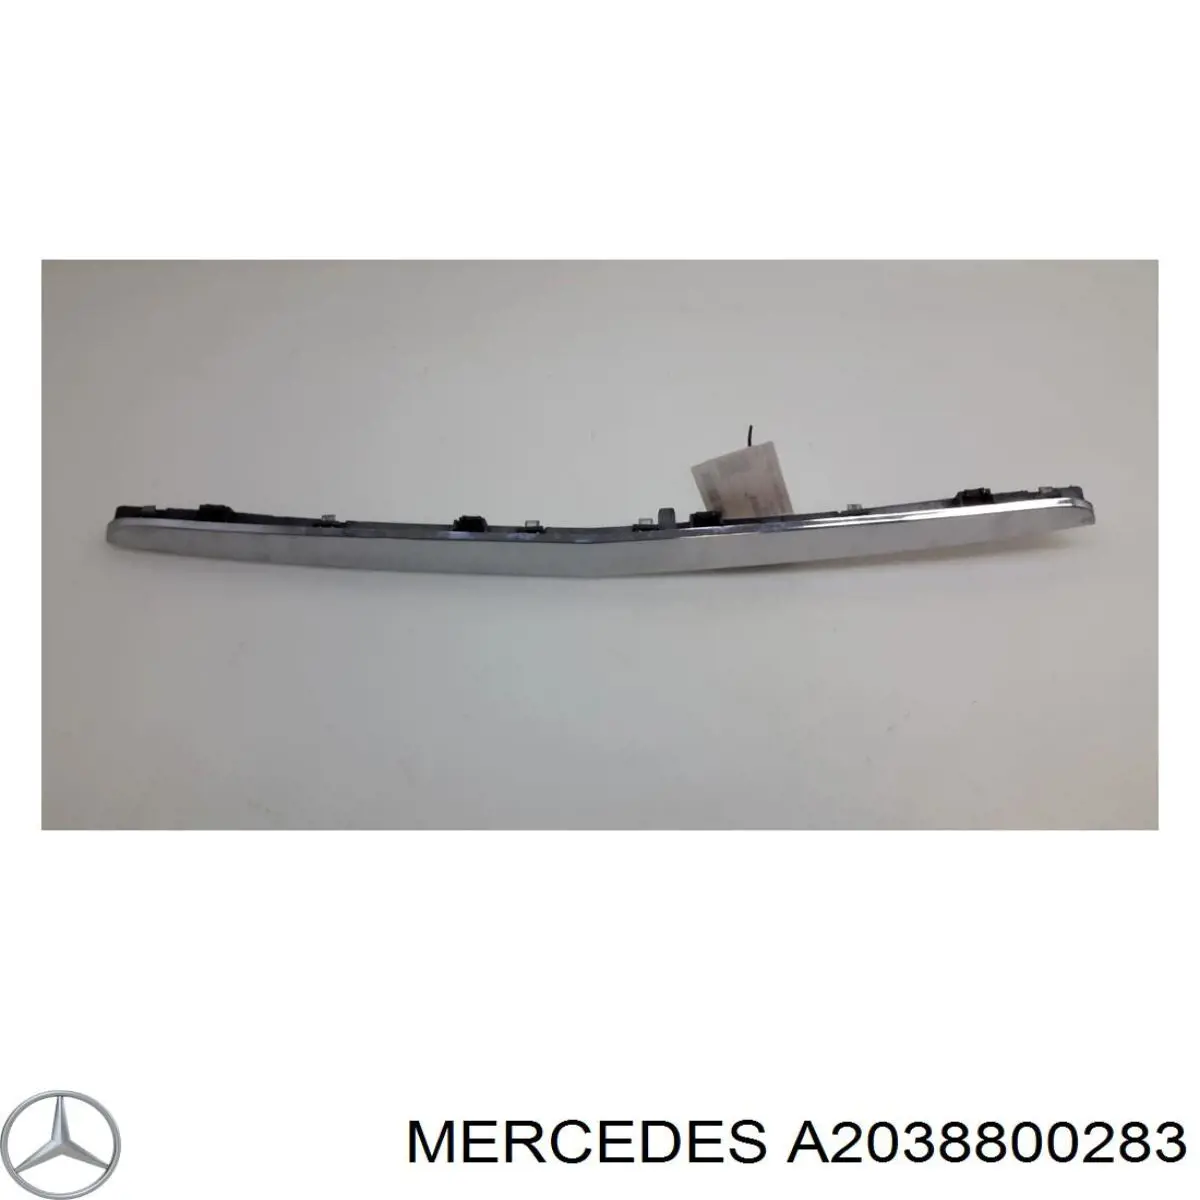 Moldura de rejilla parachoques superior Mercedes A2038800283